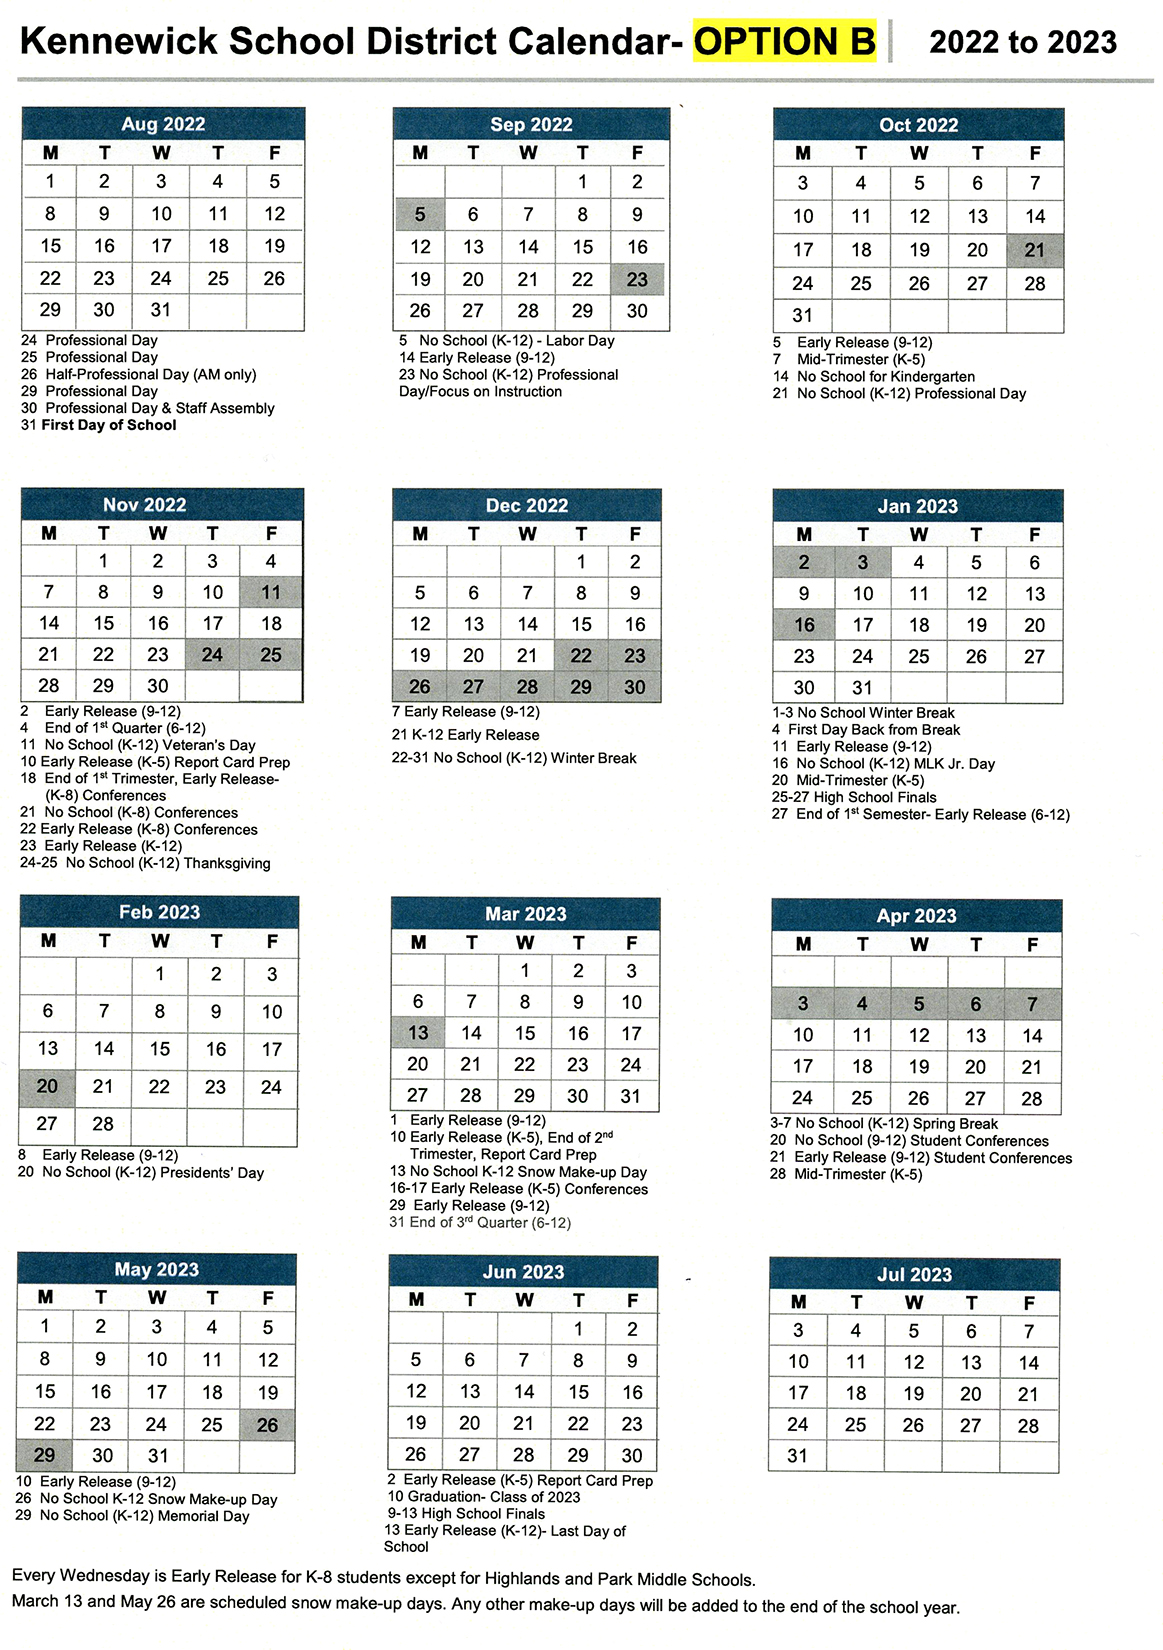 2022-23 Calendar Option B